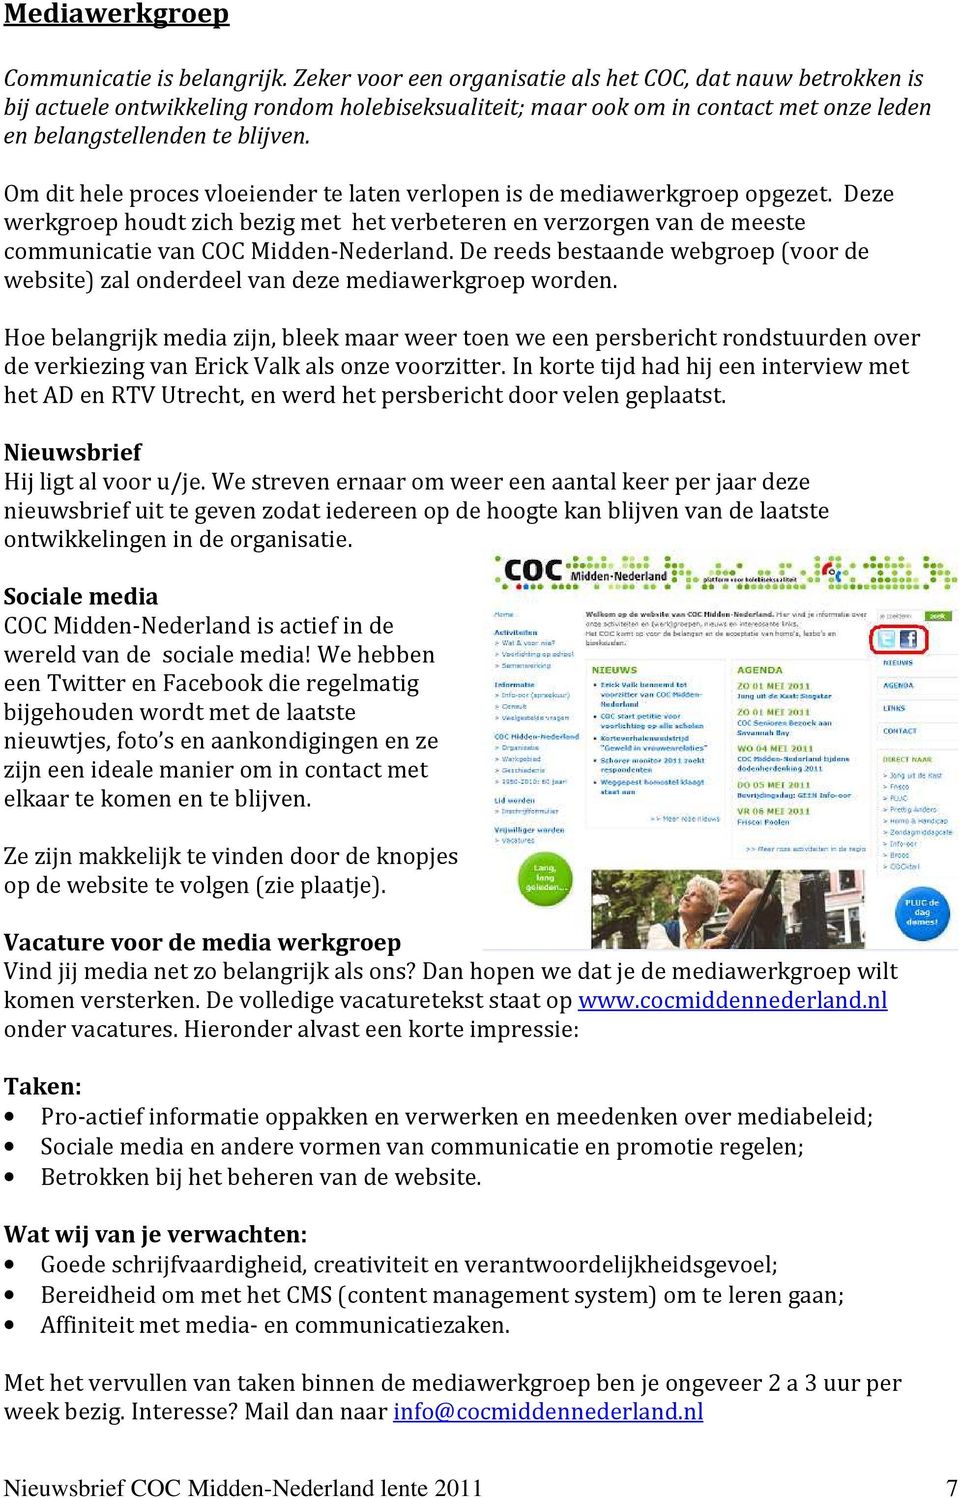 Om dit hele proces vloeiender te laten verlopen is de mediawerkgroep opgezet. Deze werkgroep houdt zich bezig met het verbeteren en verzorgen van de meeste communicatie van COC Midden-Nederland.